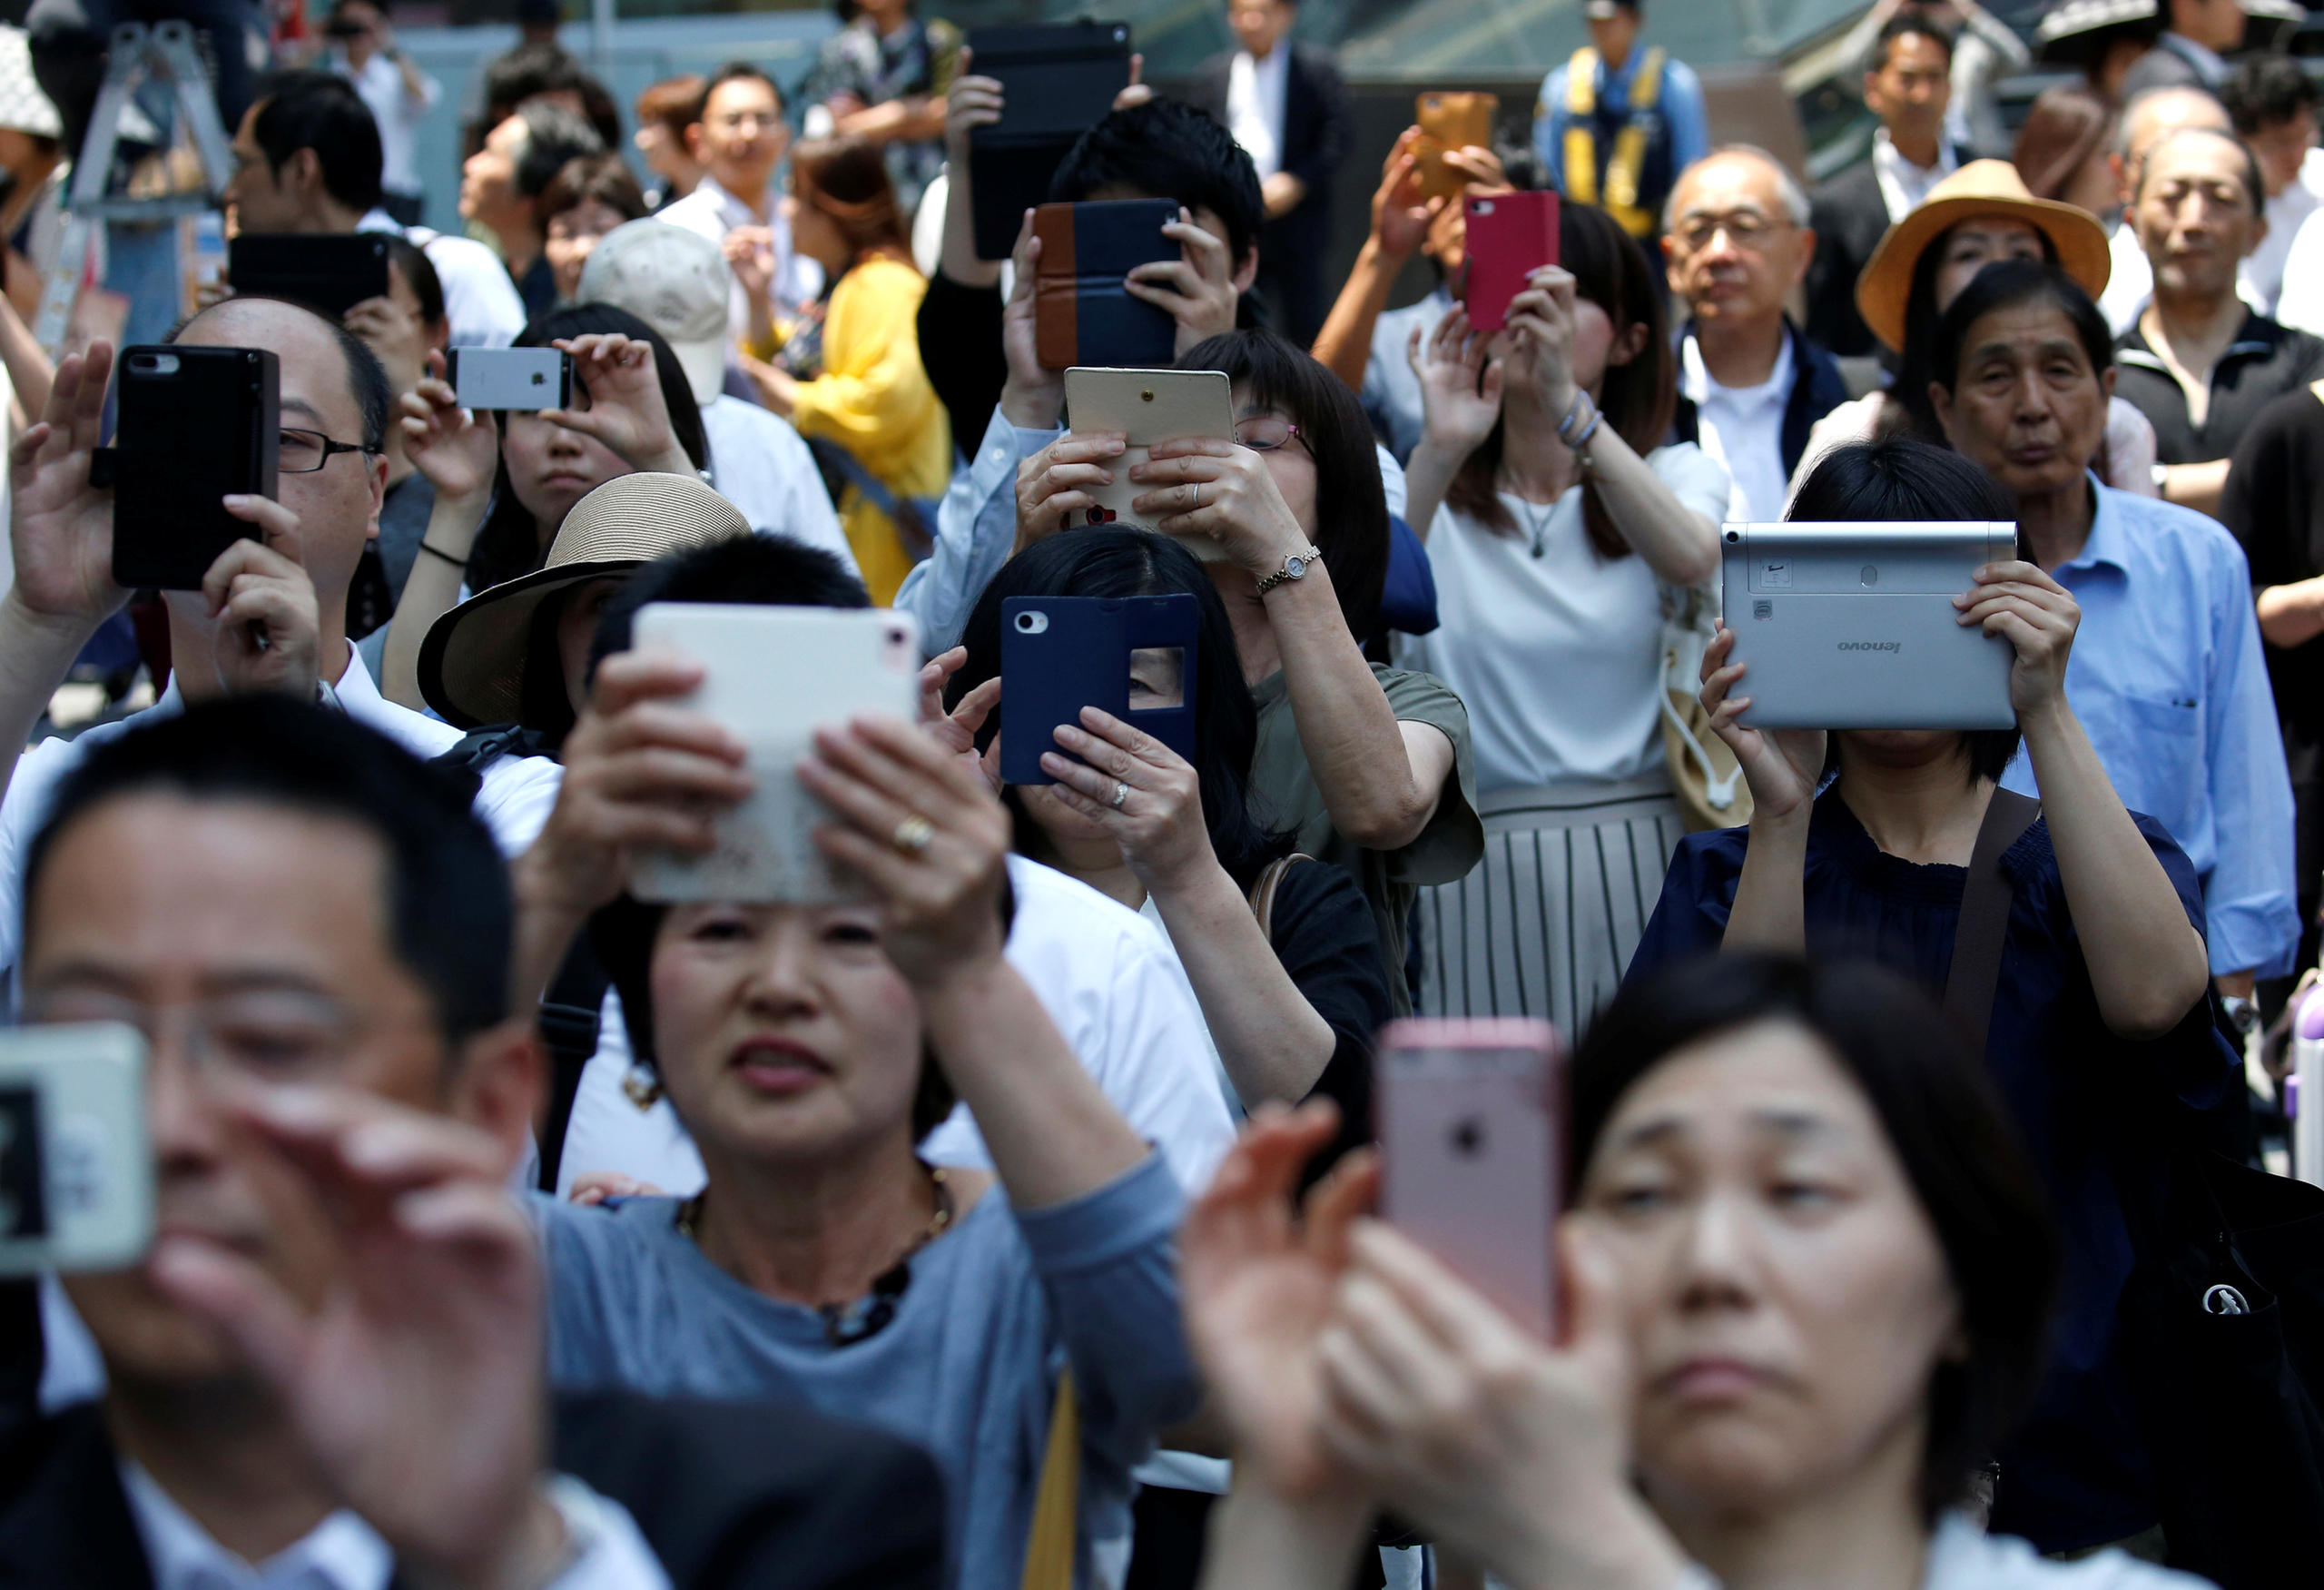 Pessoas filmando com seu celular o candidato em Tóquio